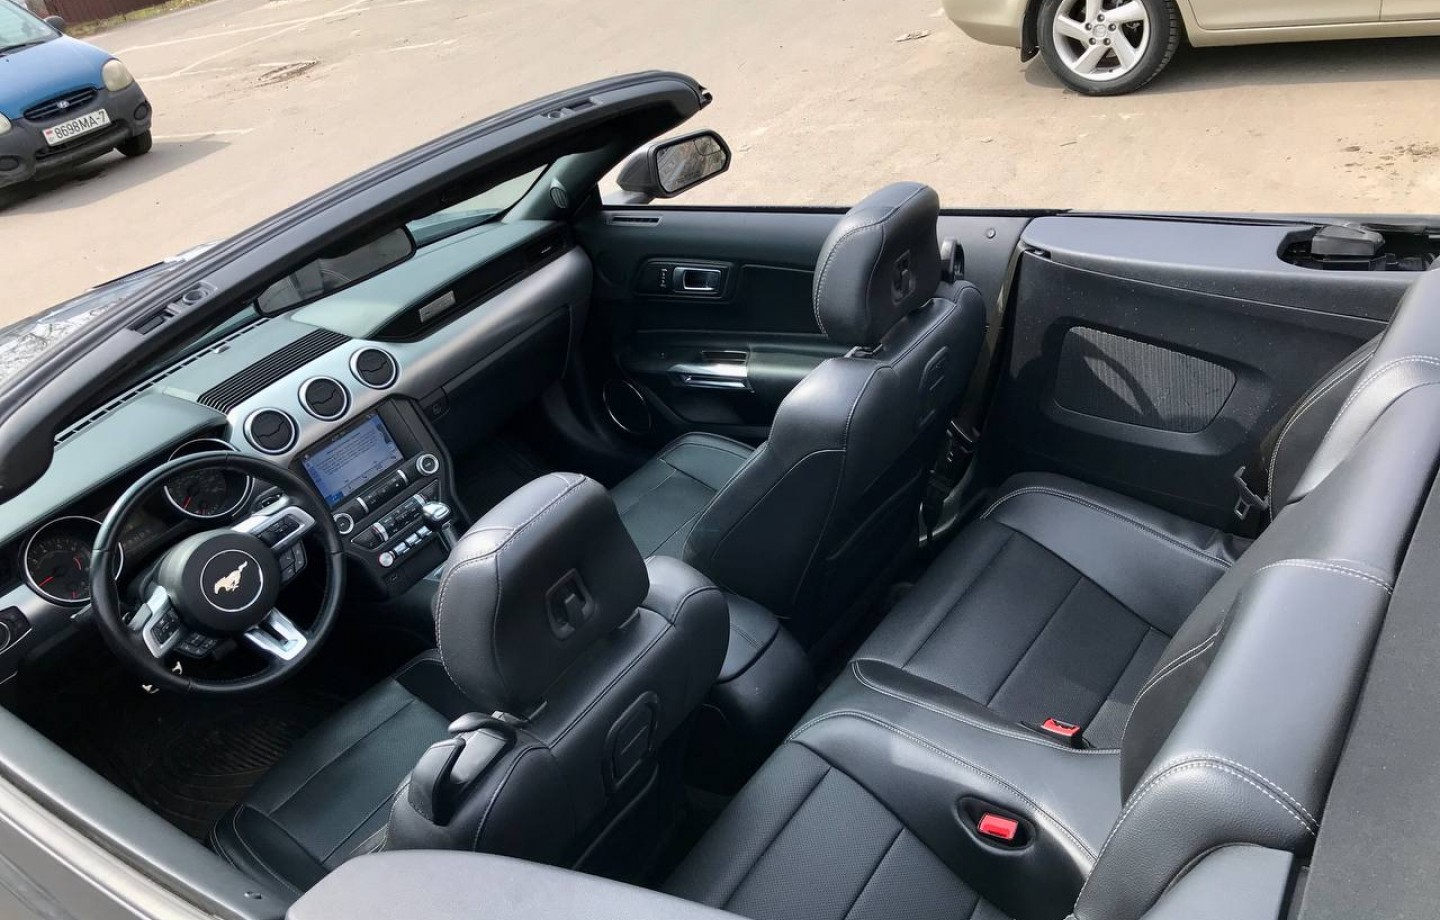 Аренда  Ford Mustang VI Cabrio  5 класса 2019 года в городе Минск от 134 $/сутки,  двигатель: Бензин , объем 2.3 AT EcoBoost литров, КАСКО (Мультидрайв), без водителя, вид 6 - West Group